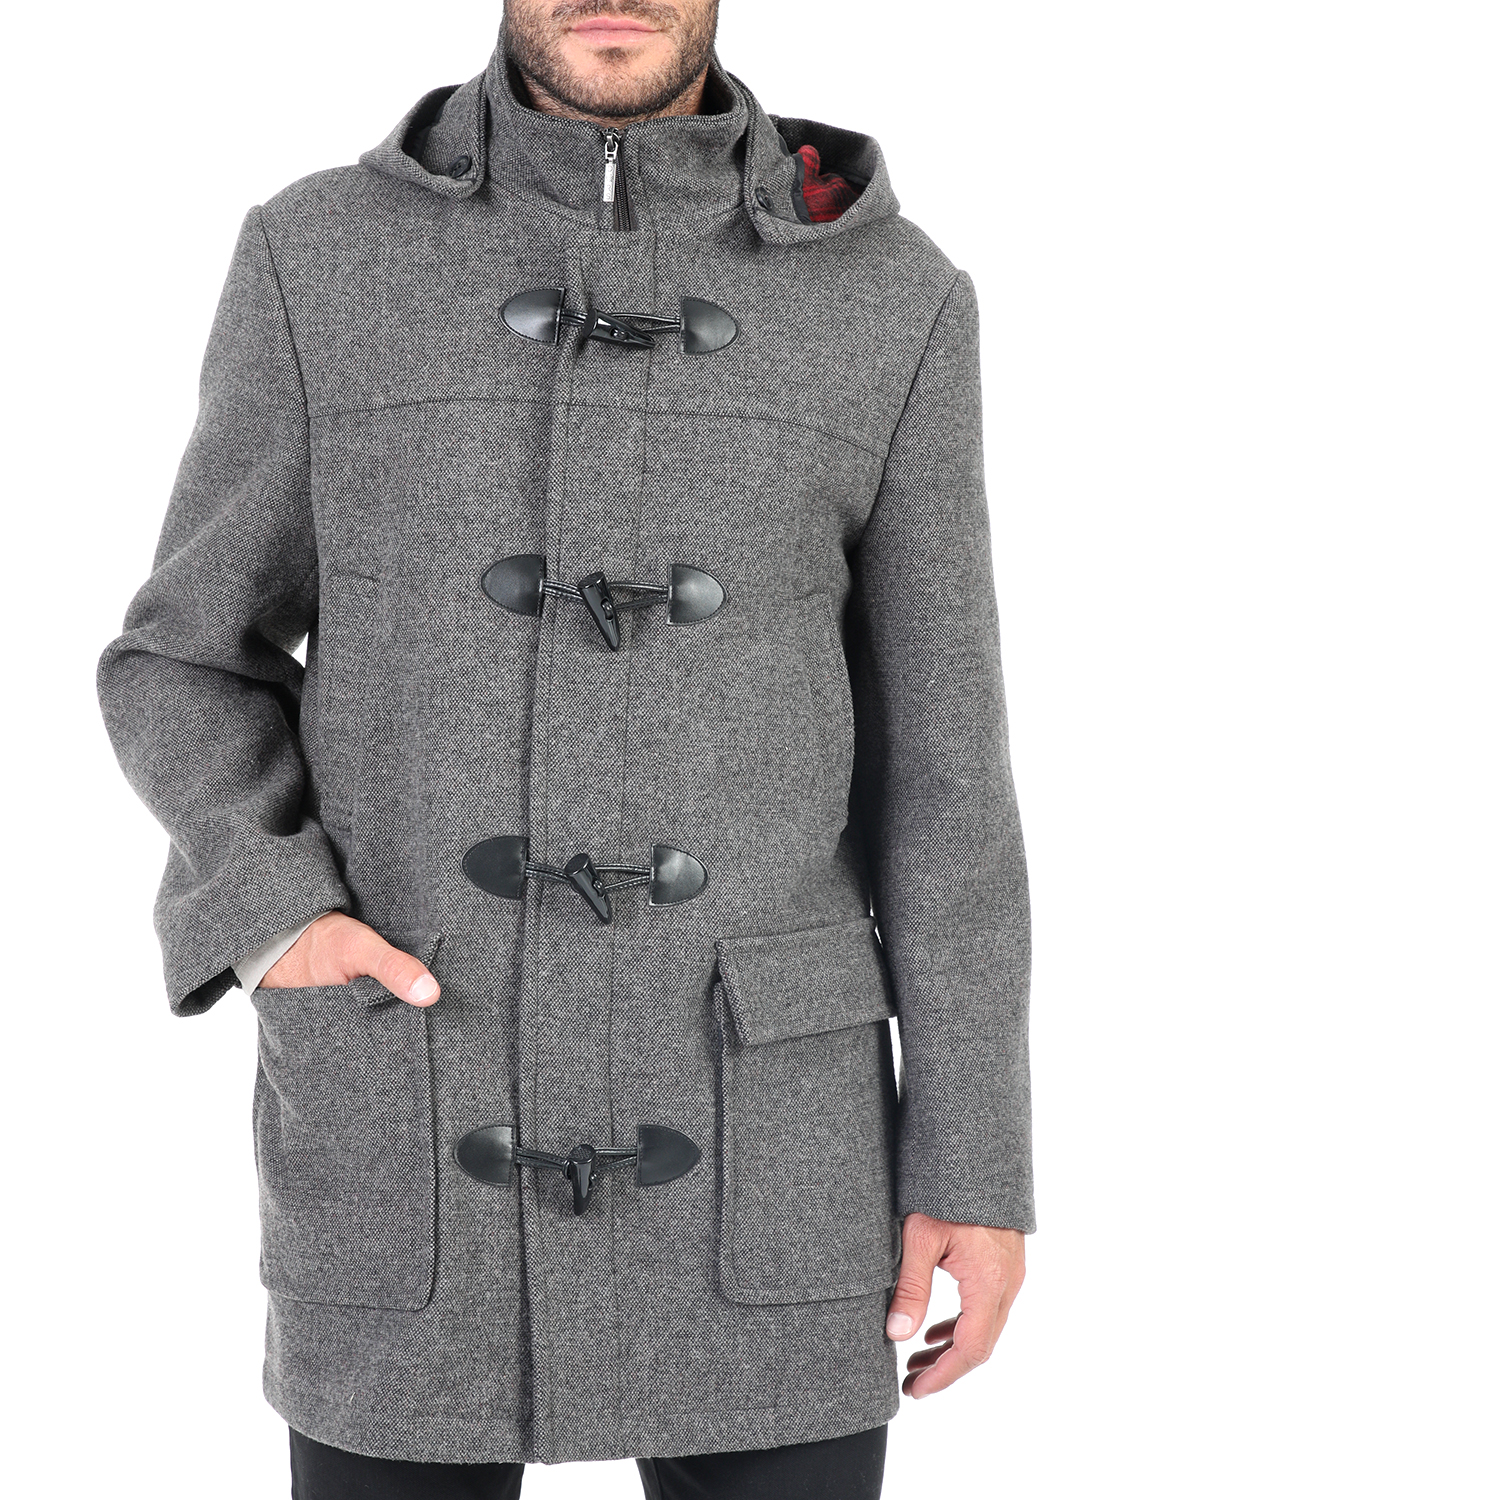 Ανδρικά/Ρούχα/Πανωφόρια/Παλτό DORS - Ανδρικό παλτό DORS γκρι